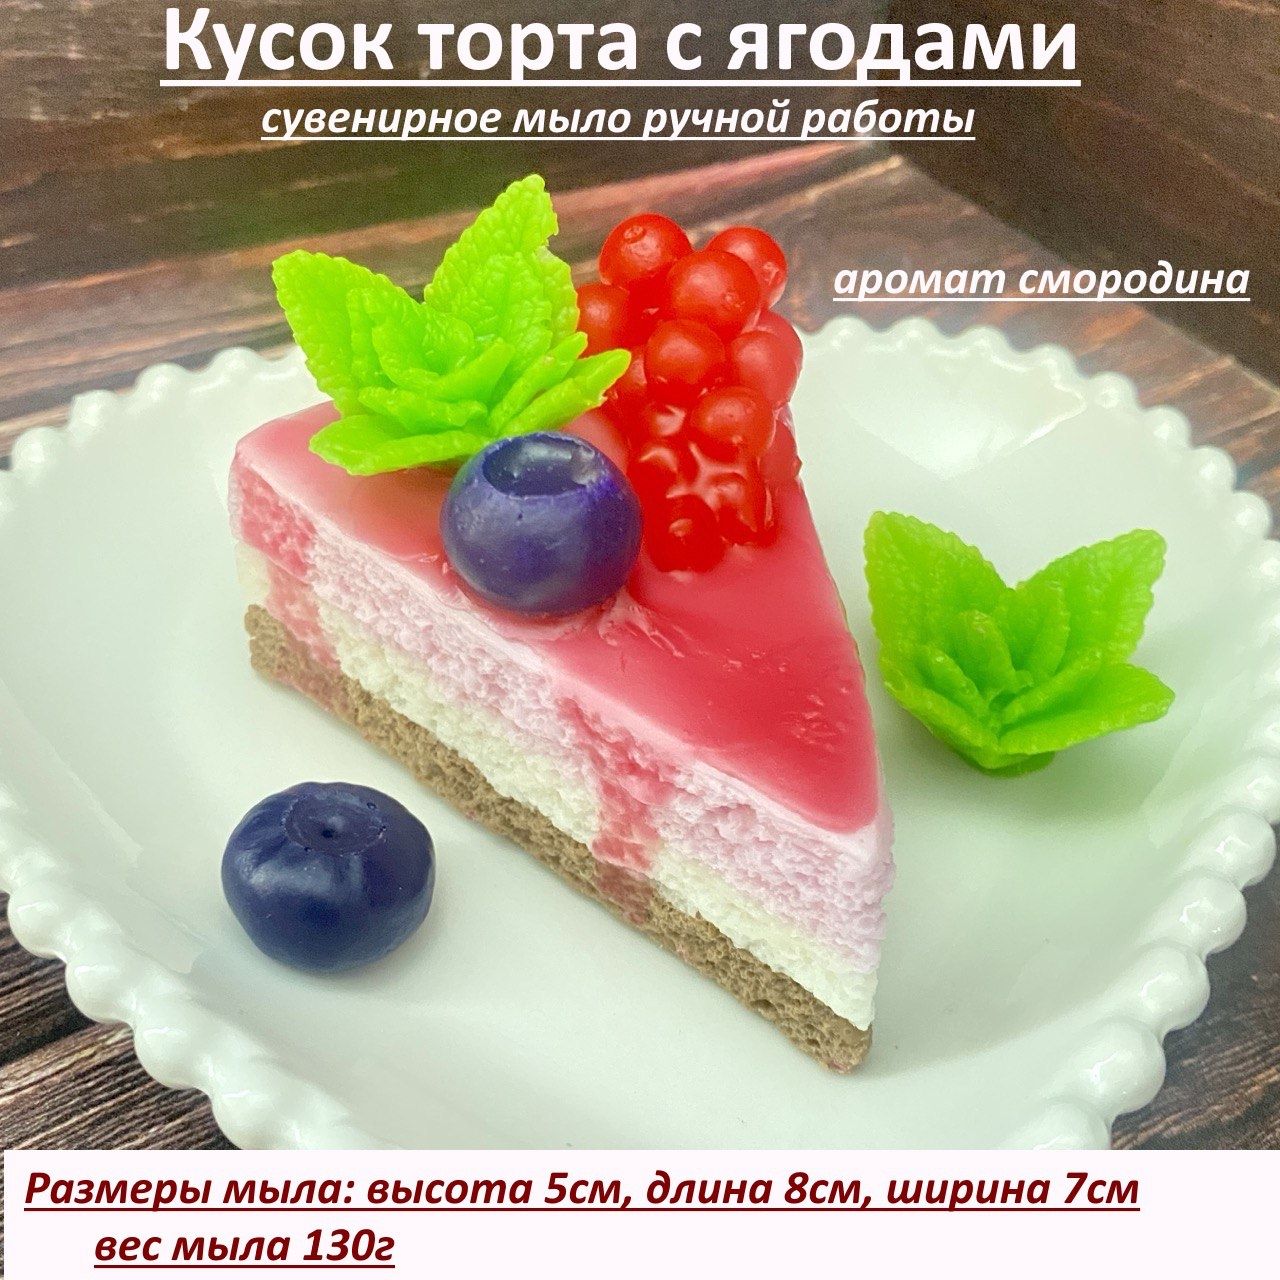 Мыло ручной работы Пирожное Бисквит торт малина - Ежанька